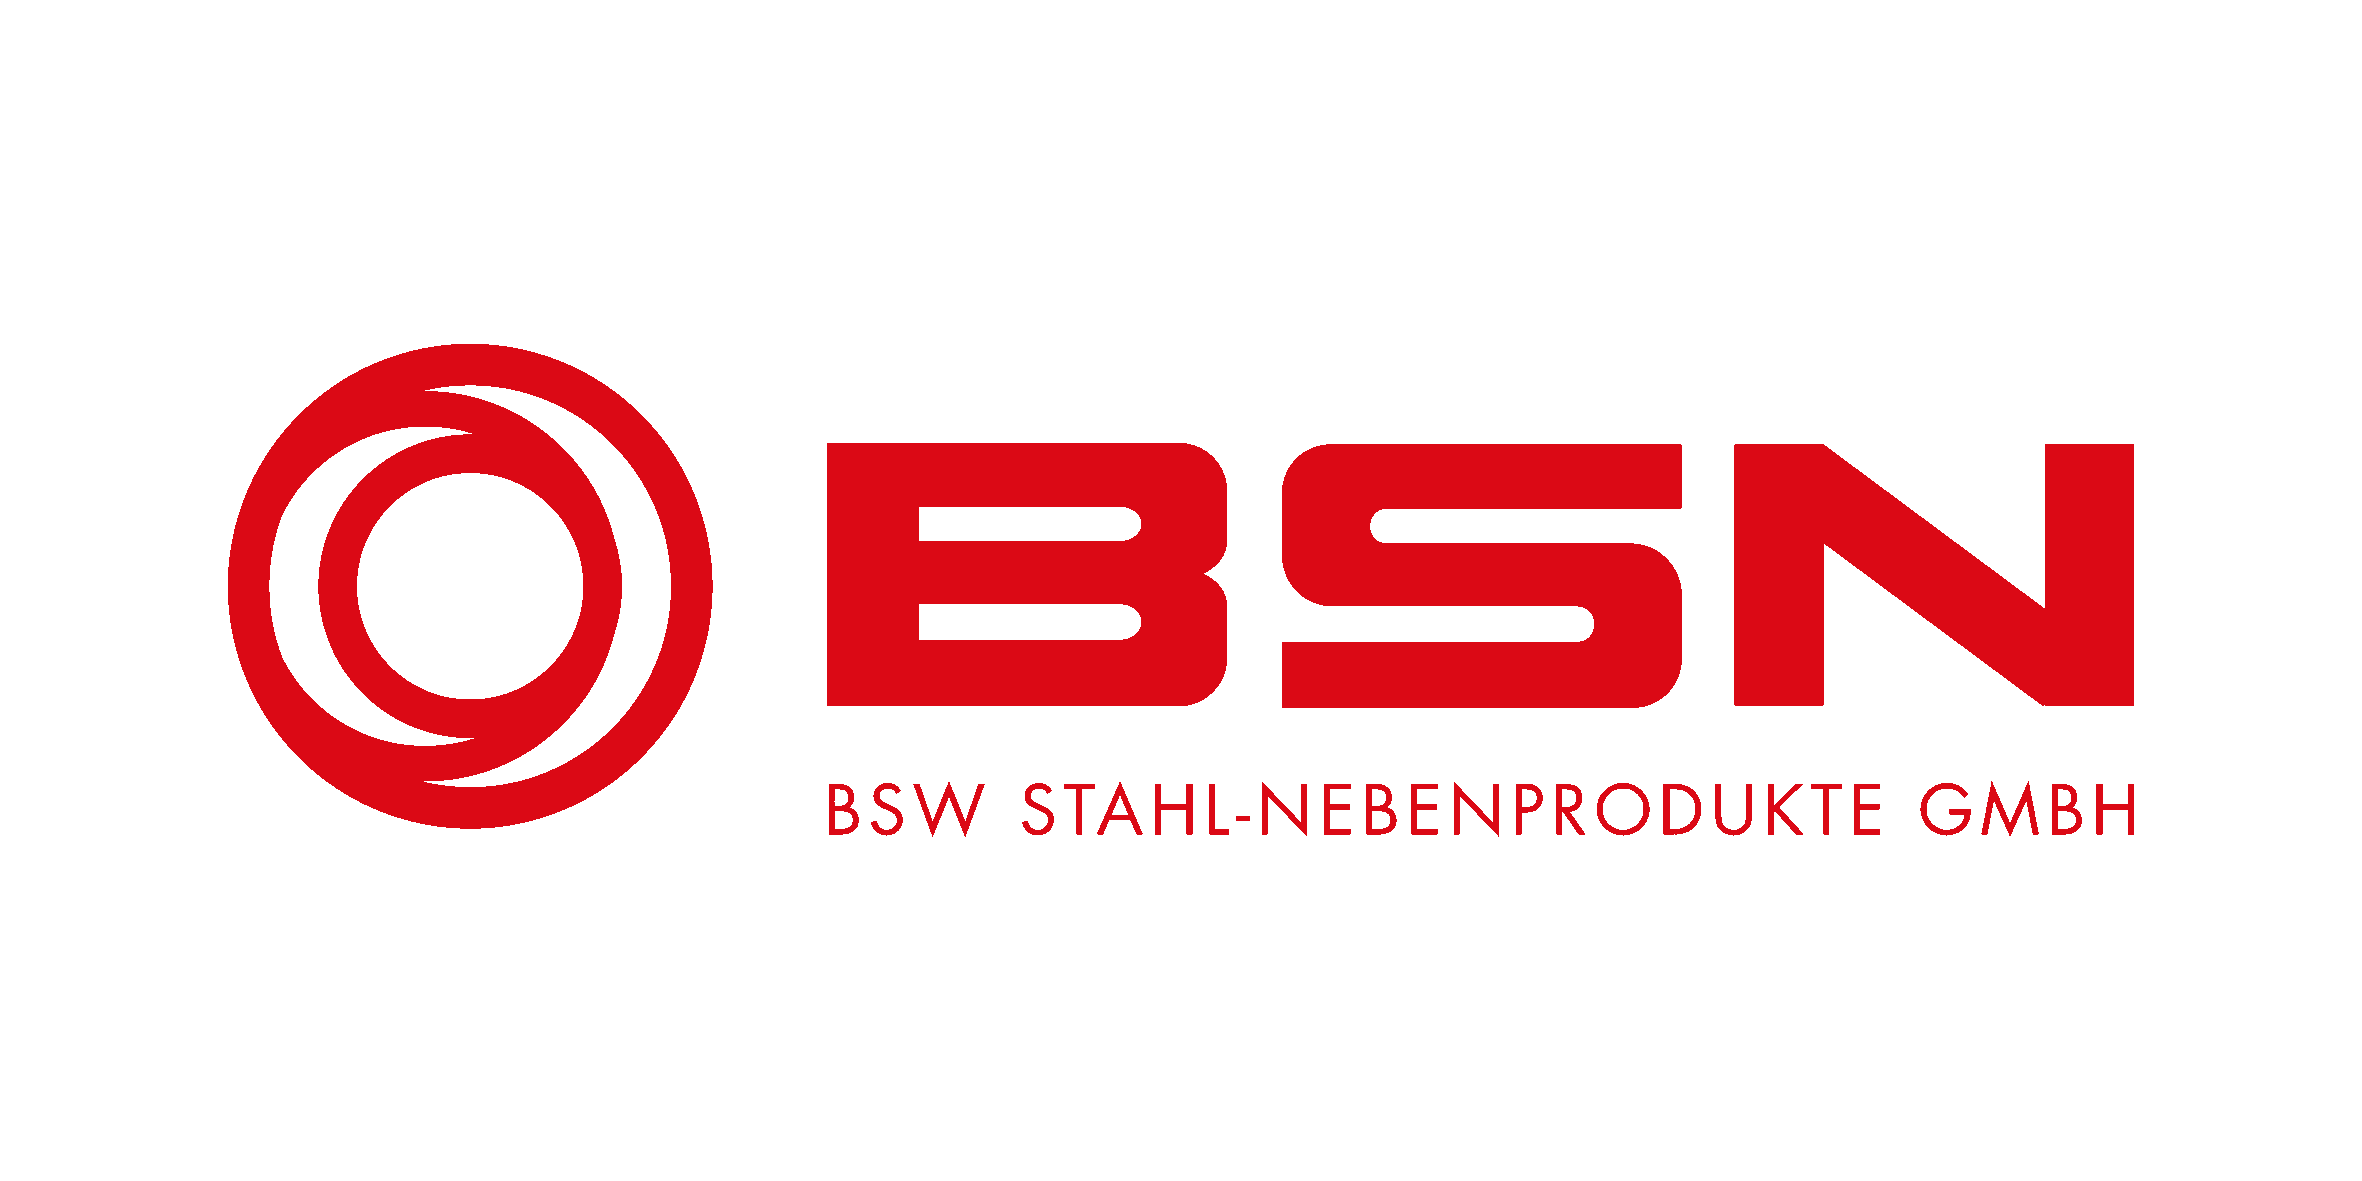 BSW Stahl-Nebenprodukte GmbH